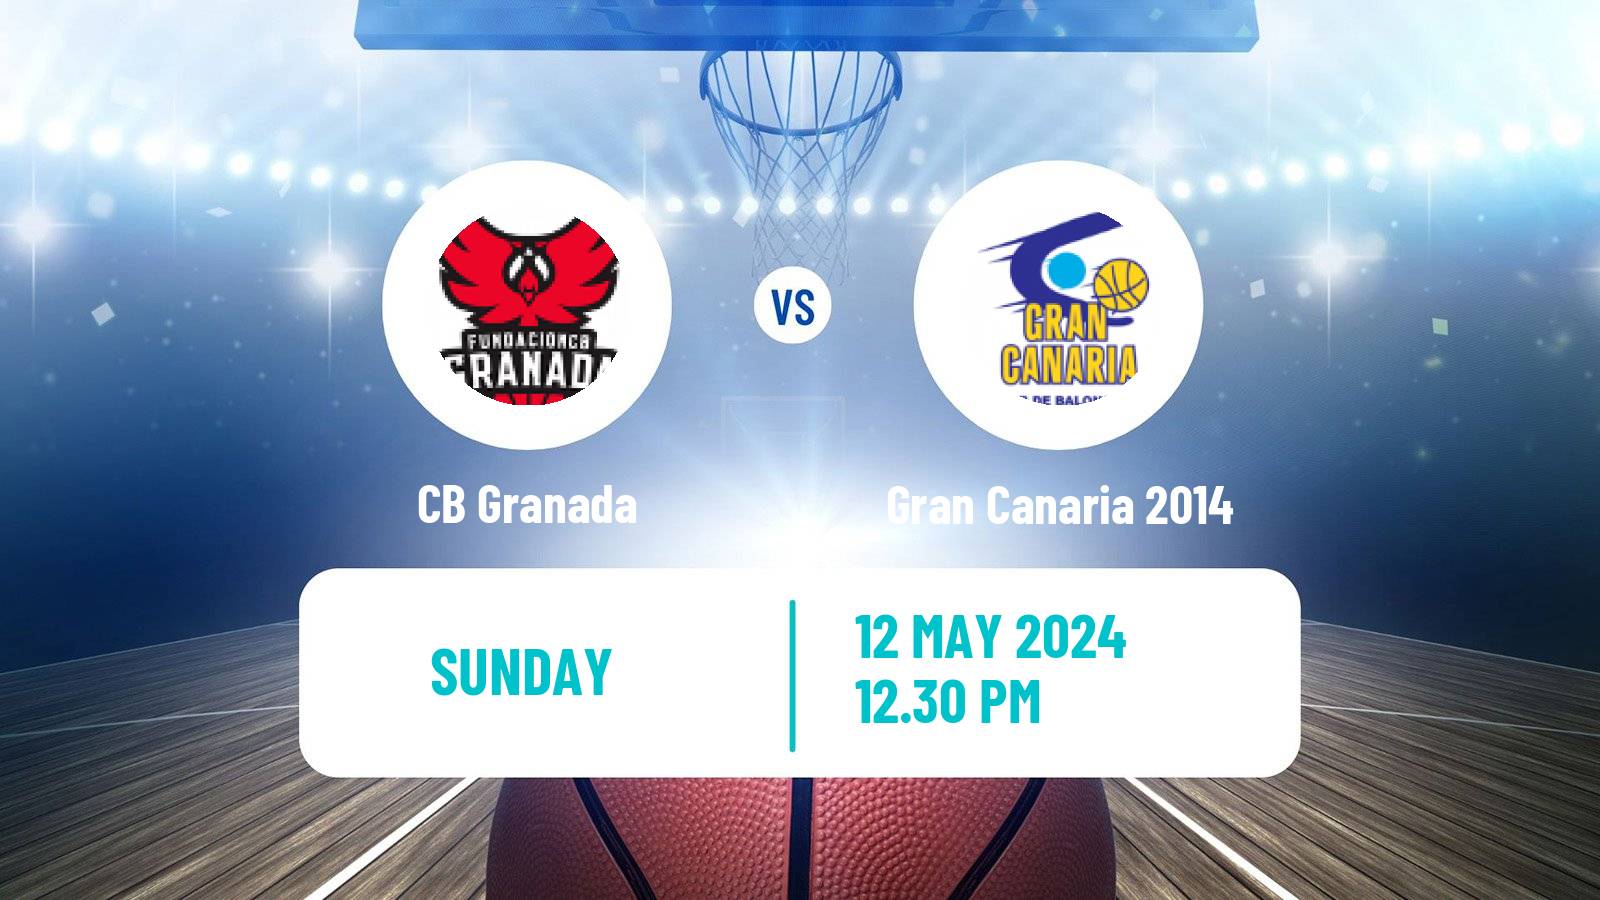 Basketball Spanish ACB League Granada - Gran Canaria 2014